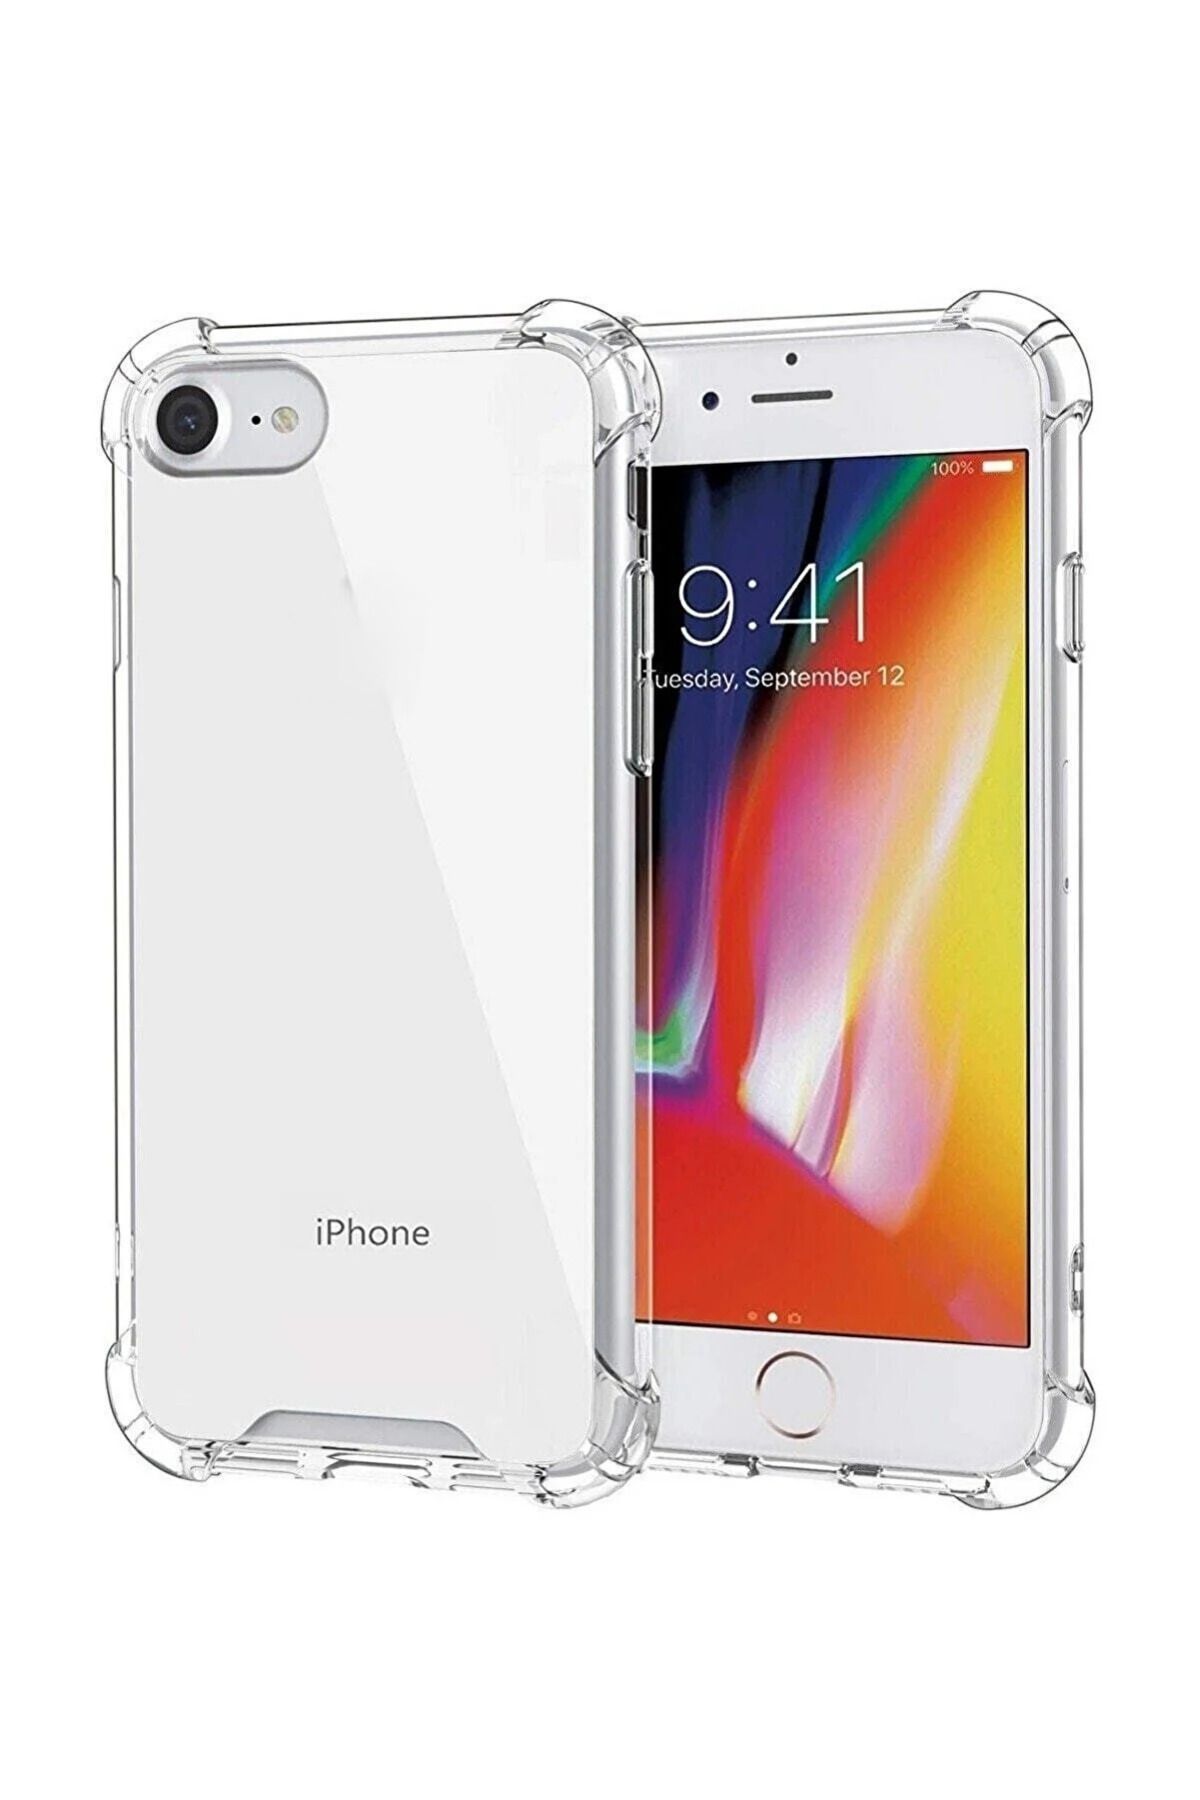 Fibaks Apple Iphone 6/6s Kılıf Crystal Sert Pc Antishock Darbe Emici Kenar Şeffaf Silikon Kapak